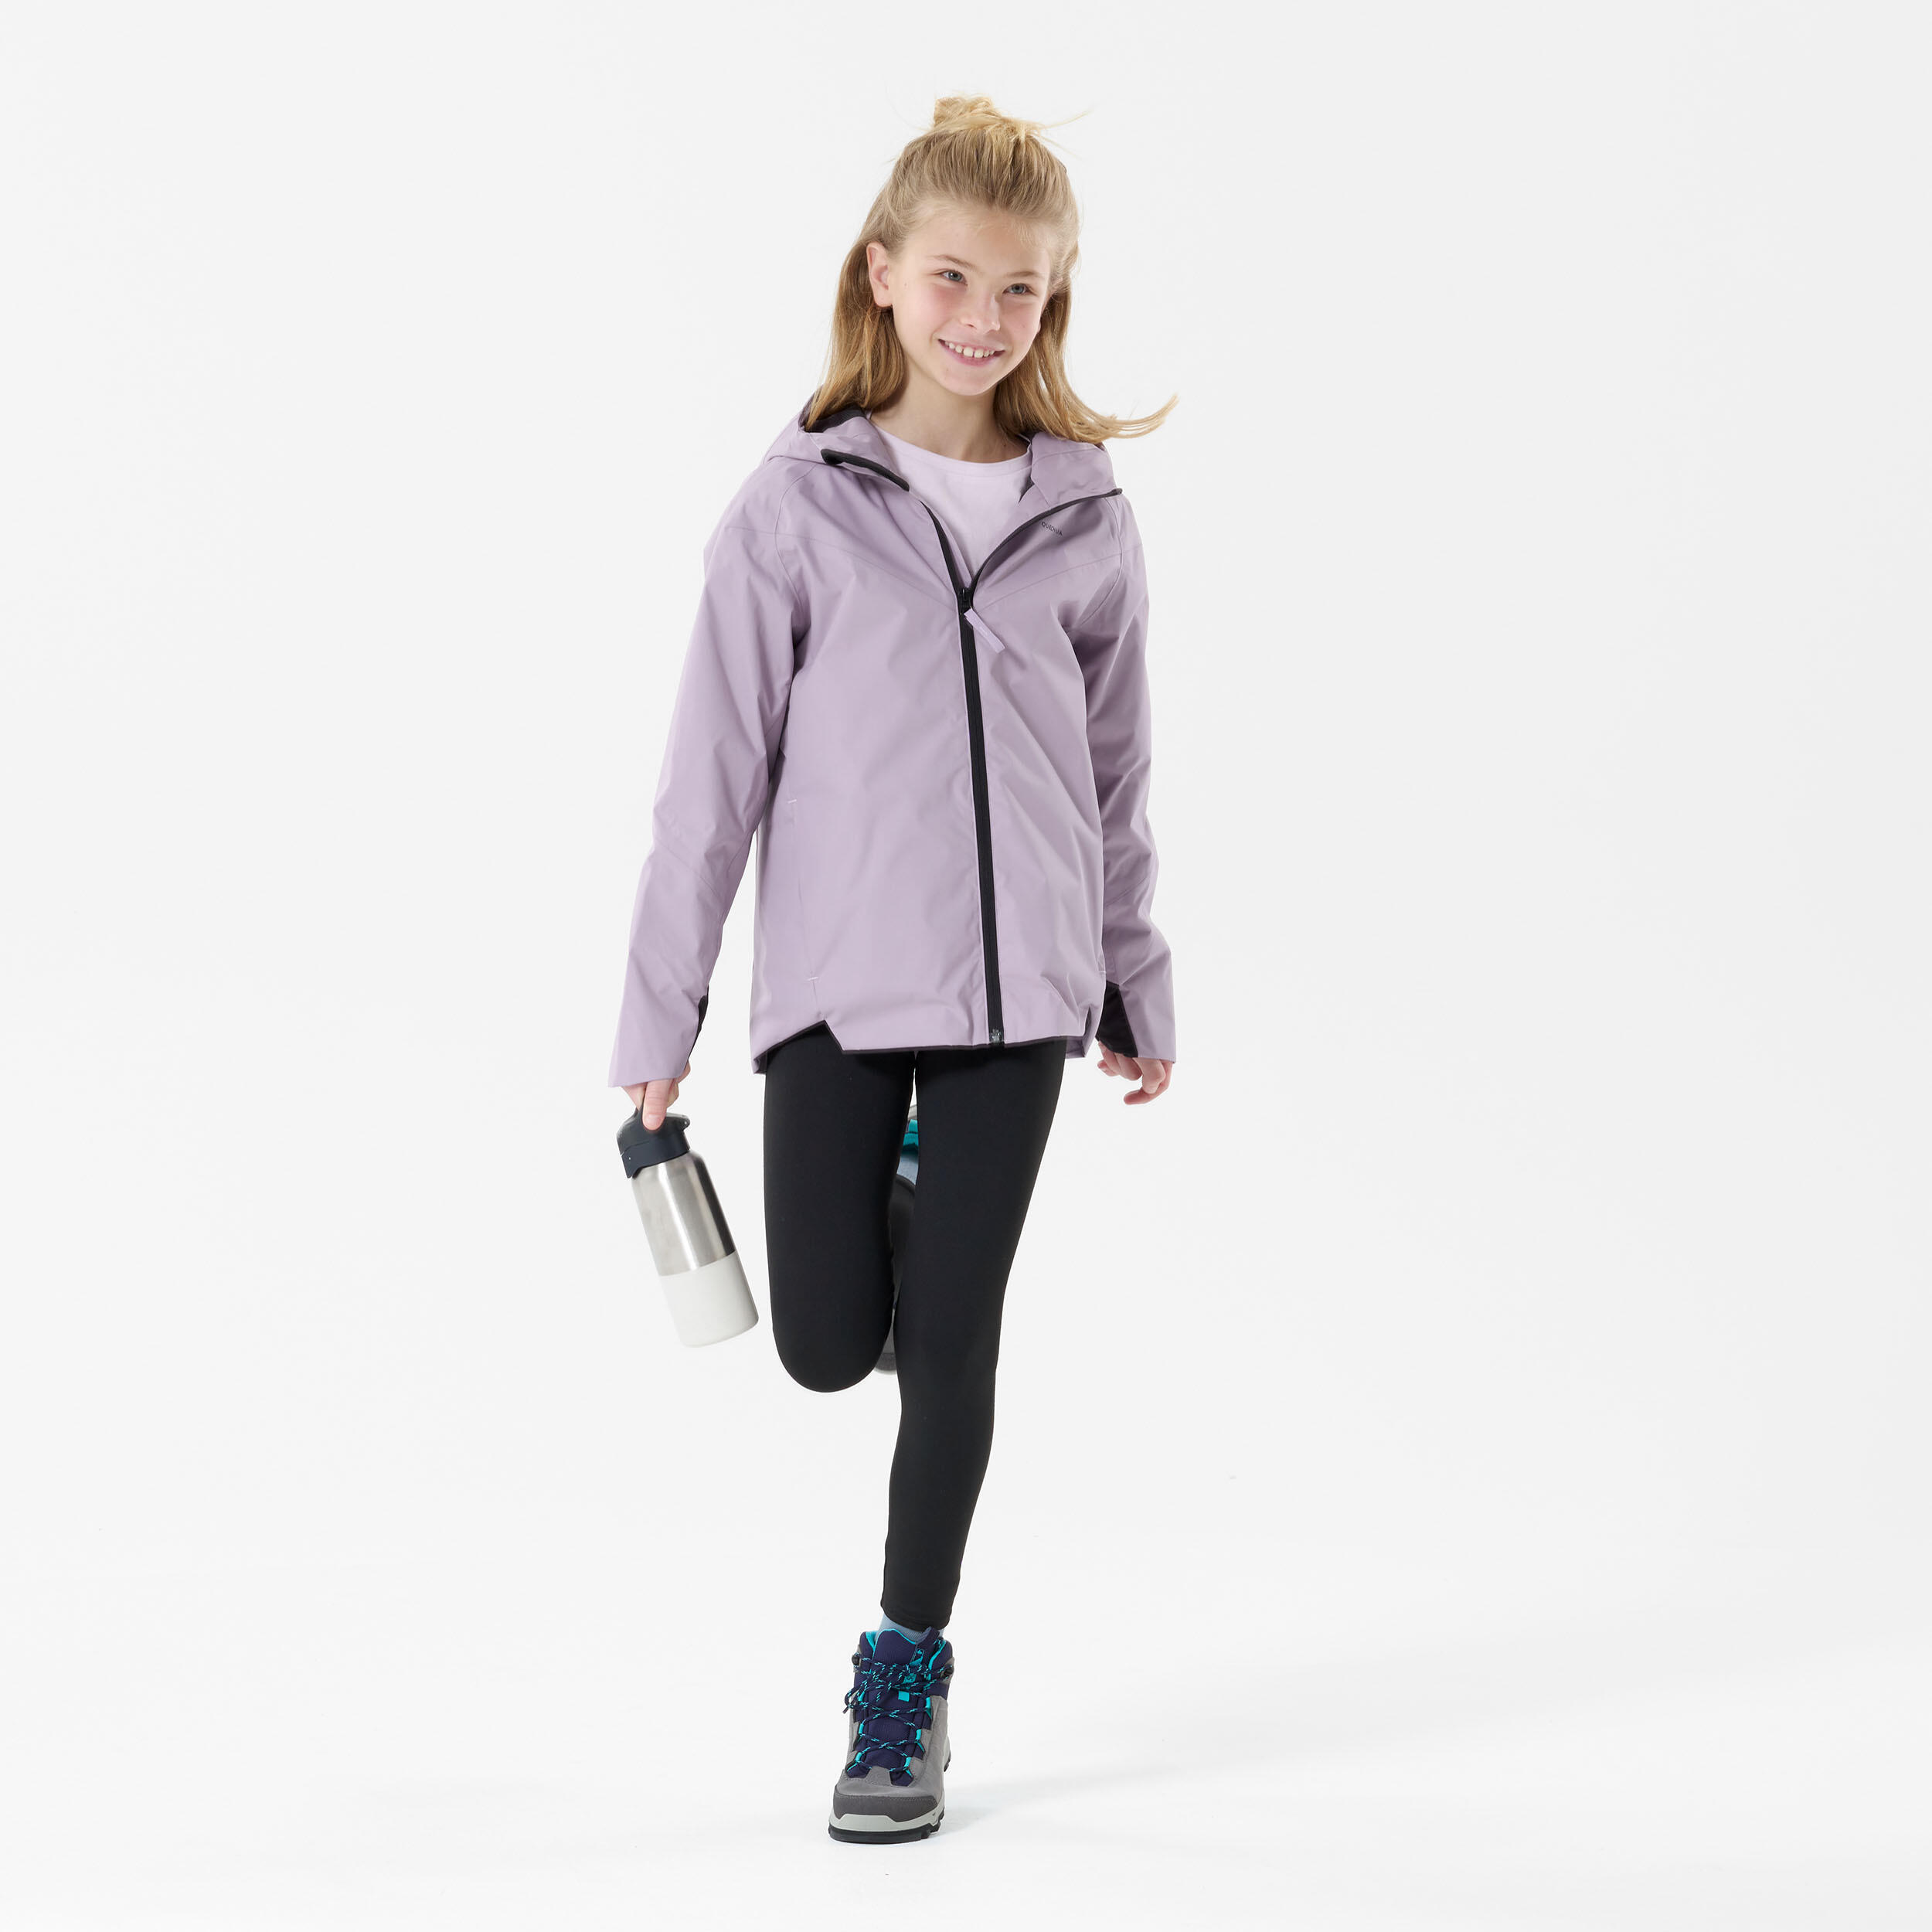 Kids’ Waterproof Hiking Jacket - MH500 - Age 7-15 years 2/7